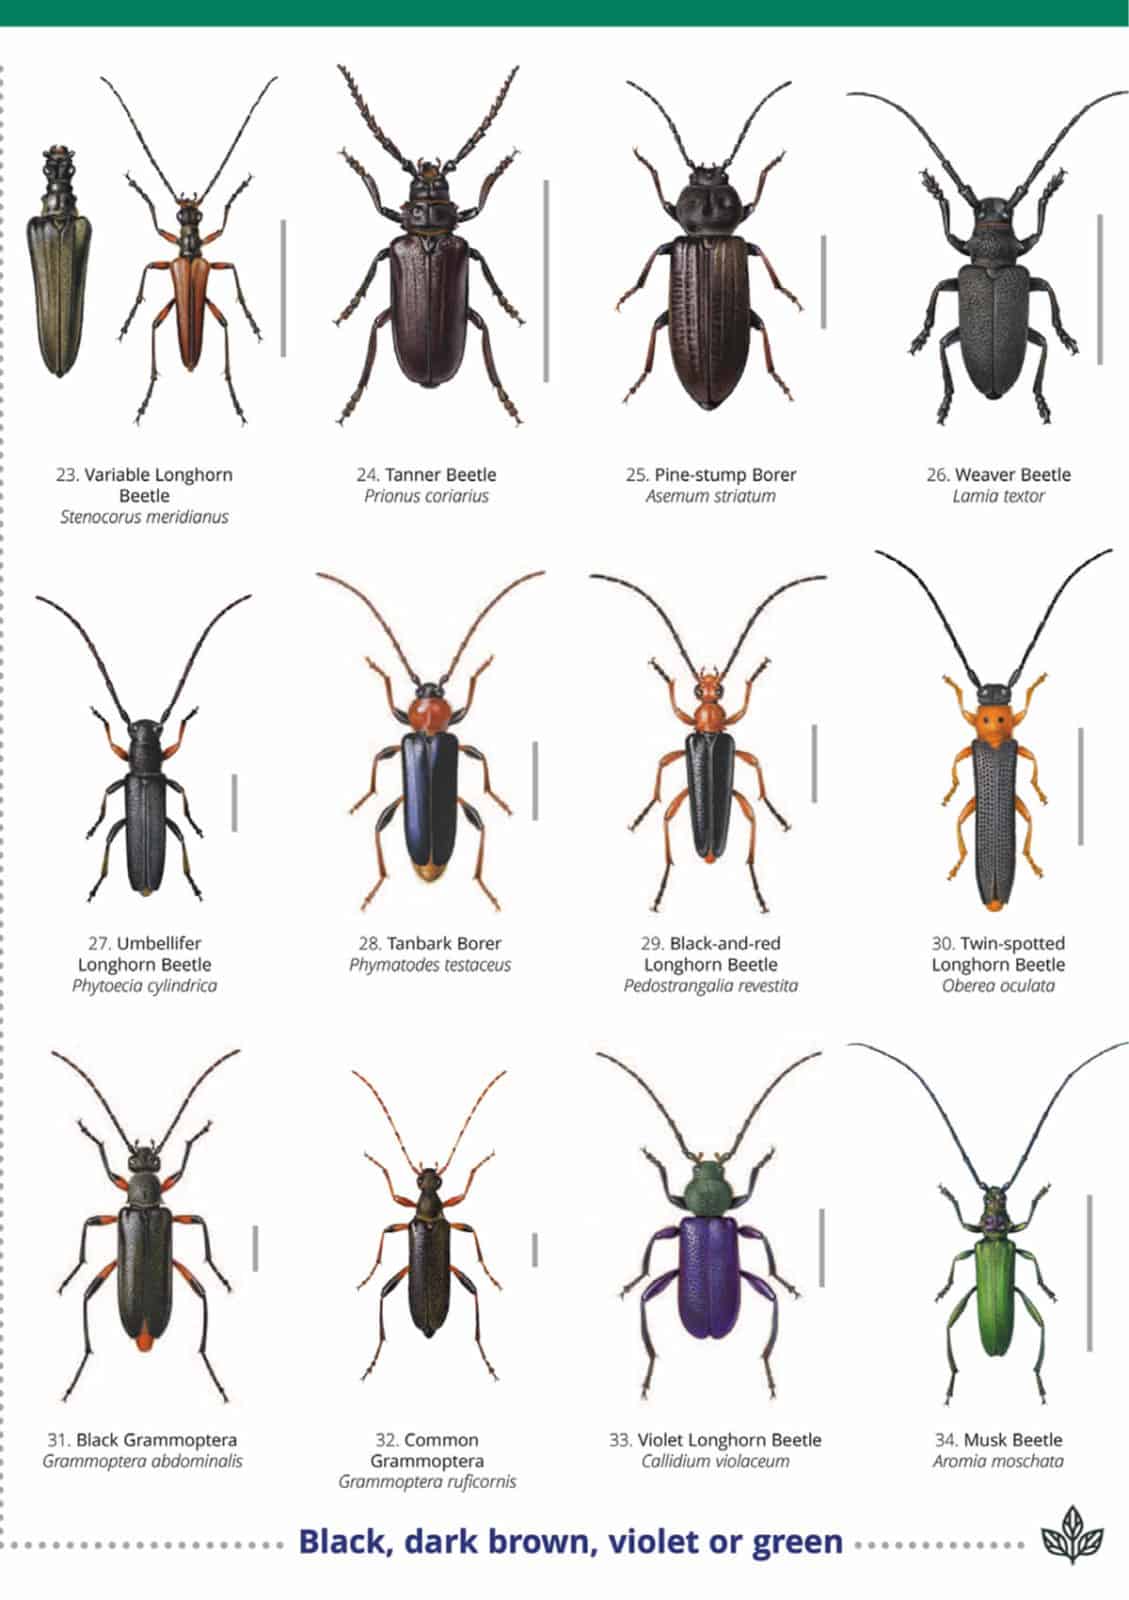 Longhorn beetles guide